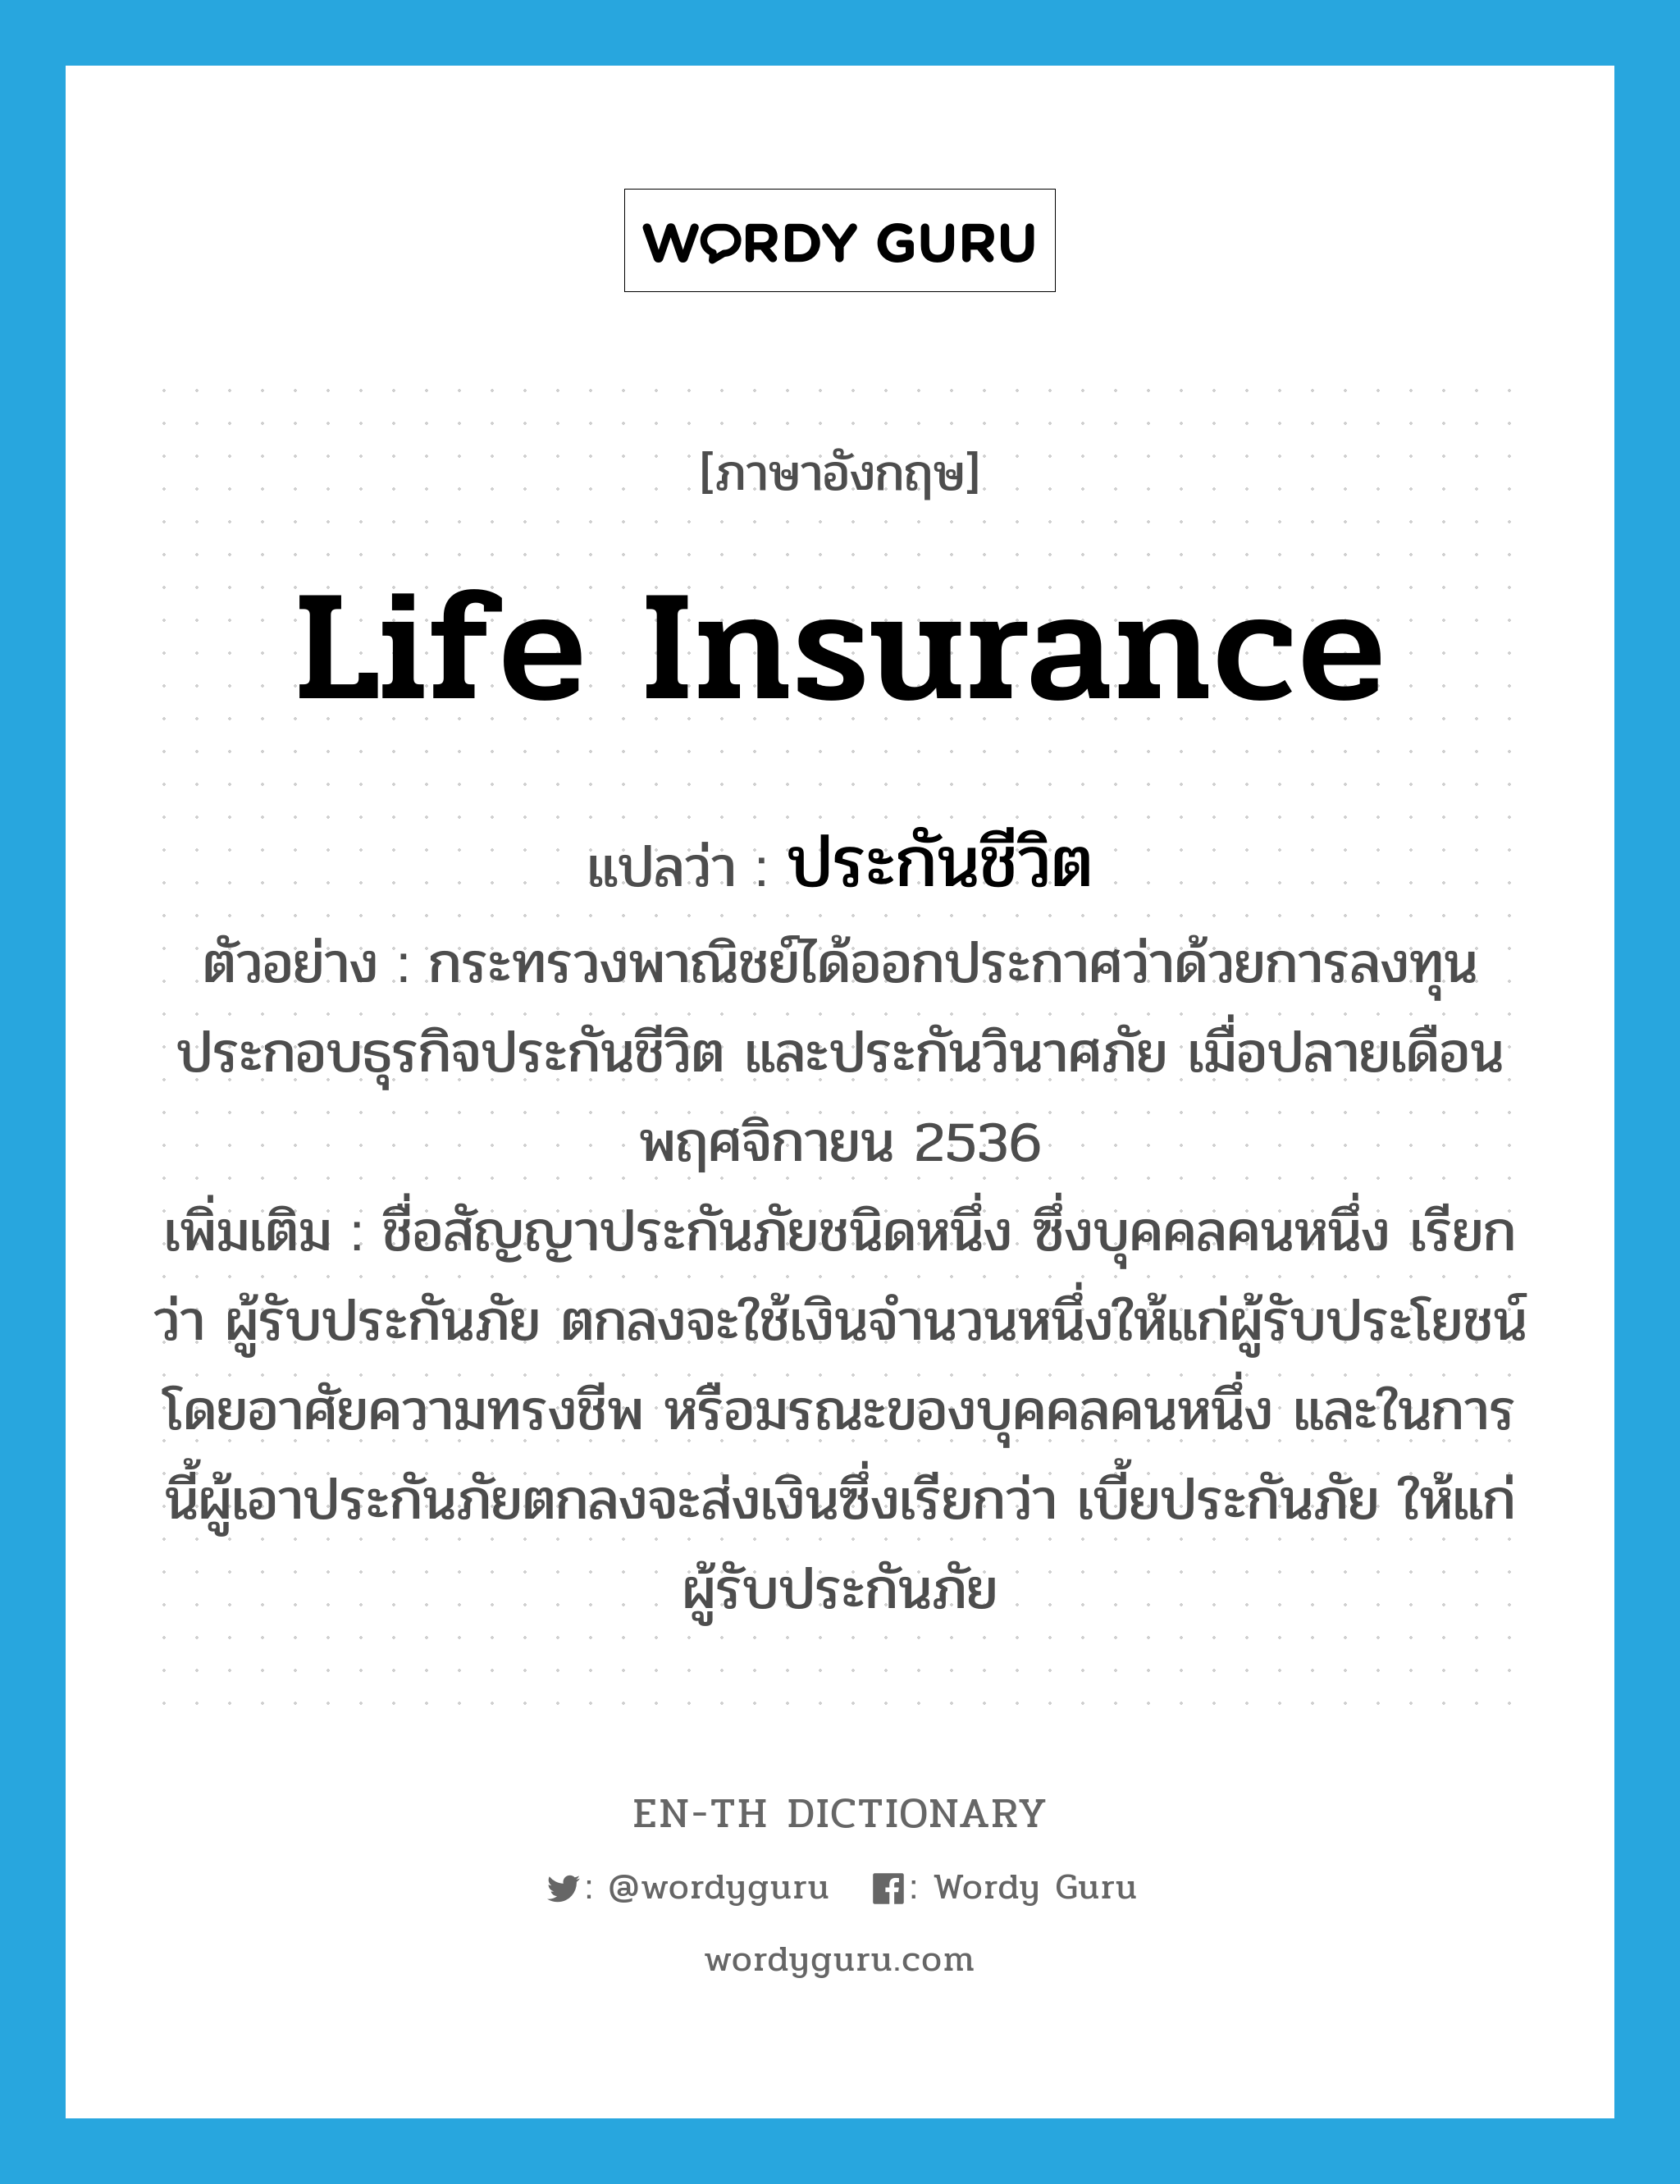 life insurance แปลว่า?, คำศัพท์ภาษาอังกฤษ life insurance แปลว่า ประกันชีวิต ประเภท N ตัวอย่าง กระทรวงพาณิชย์ได้ออกประกาศว่าด้วยการลงทุนประกอบธุรกิจประกันชีวิต และประกันวินาศภัย เมื่อปลายเดือนพฤศจิกายน 2536 เพิ่มเติม ชื่อสัญญาประกันภัยชนิดหนึ่ง ซึ่งบุคคลคนหนึ่ง เรียกว่า ผู้รับประกันภัย ตกลงจะใช้เงินจำนวนหนึ่งให้แก่ผู้รับประโยชน์โดยอาศัยความทรงชีพ หรือมรณะของบุคคลคนหนึ่ง และในการนี้ผู้เอาประกันภัยตกลงจะส่งเงินซึ่งเรียกว่า เบี้ยประกันภัย ให้แก่ผู้รับประกันภัย หมวด N